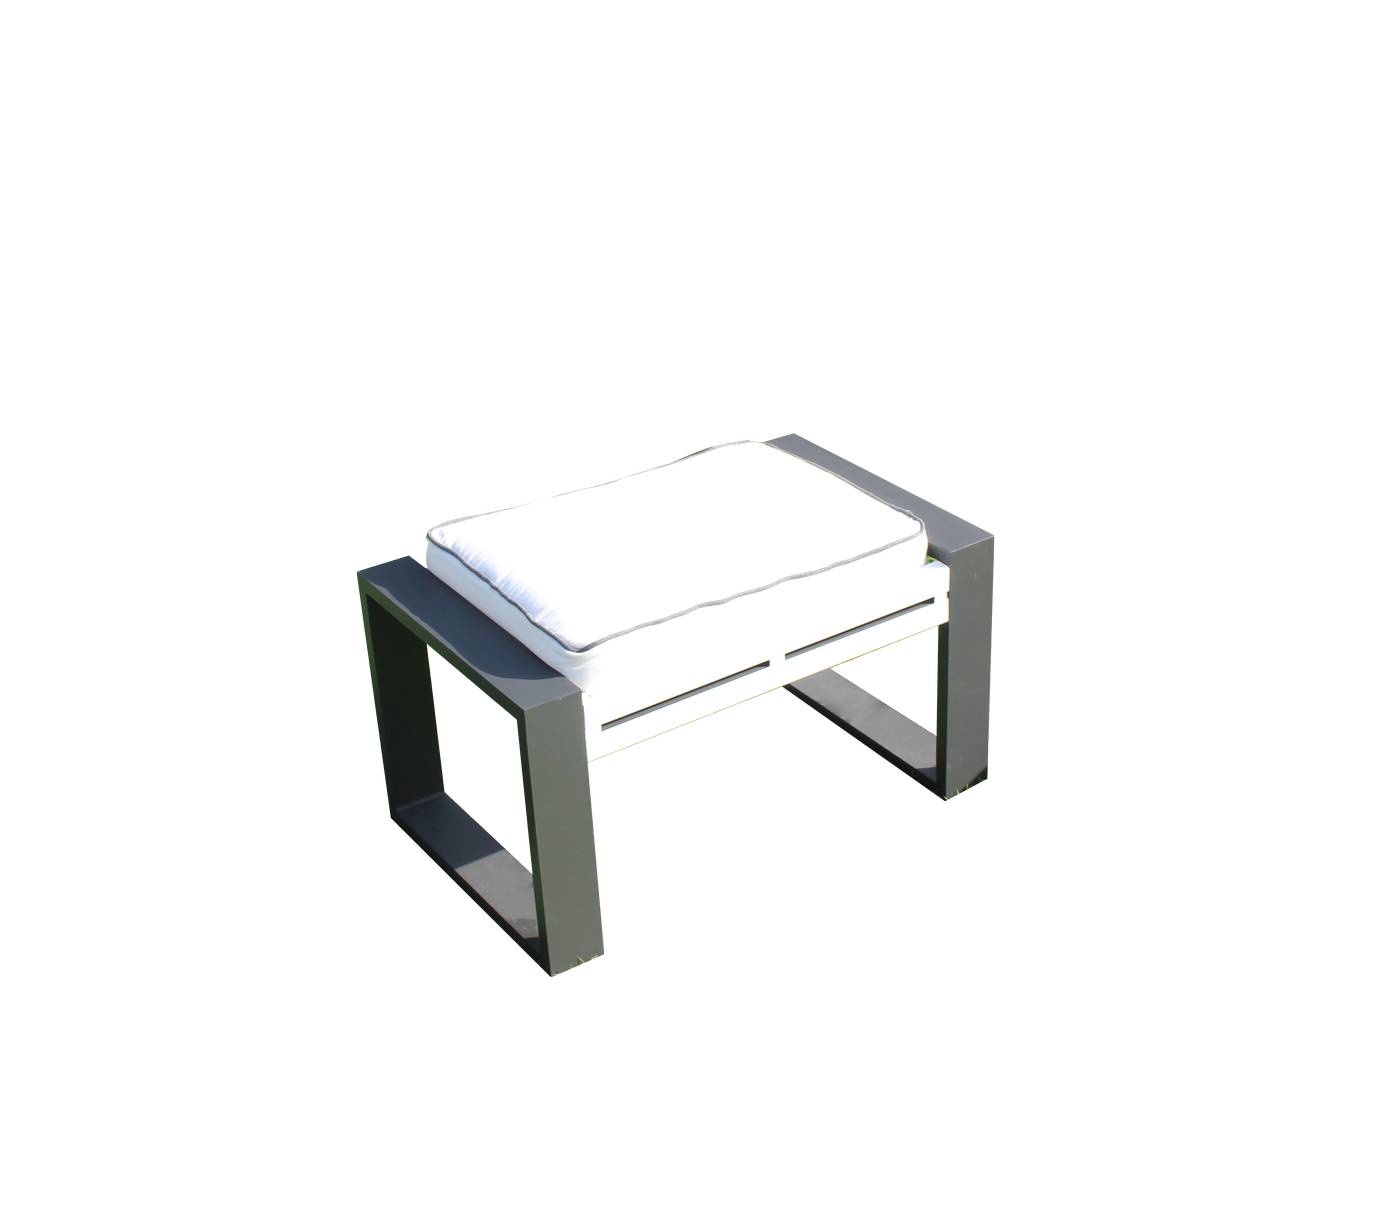 Set Aluminio Sira-10 - Coqueto conjunto de alumnio bicolor: 1 sofá de 3 plazas + 2 sillones + 2 reposapiés + 1 mesa de centro.